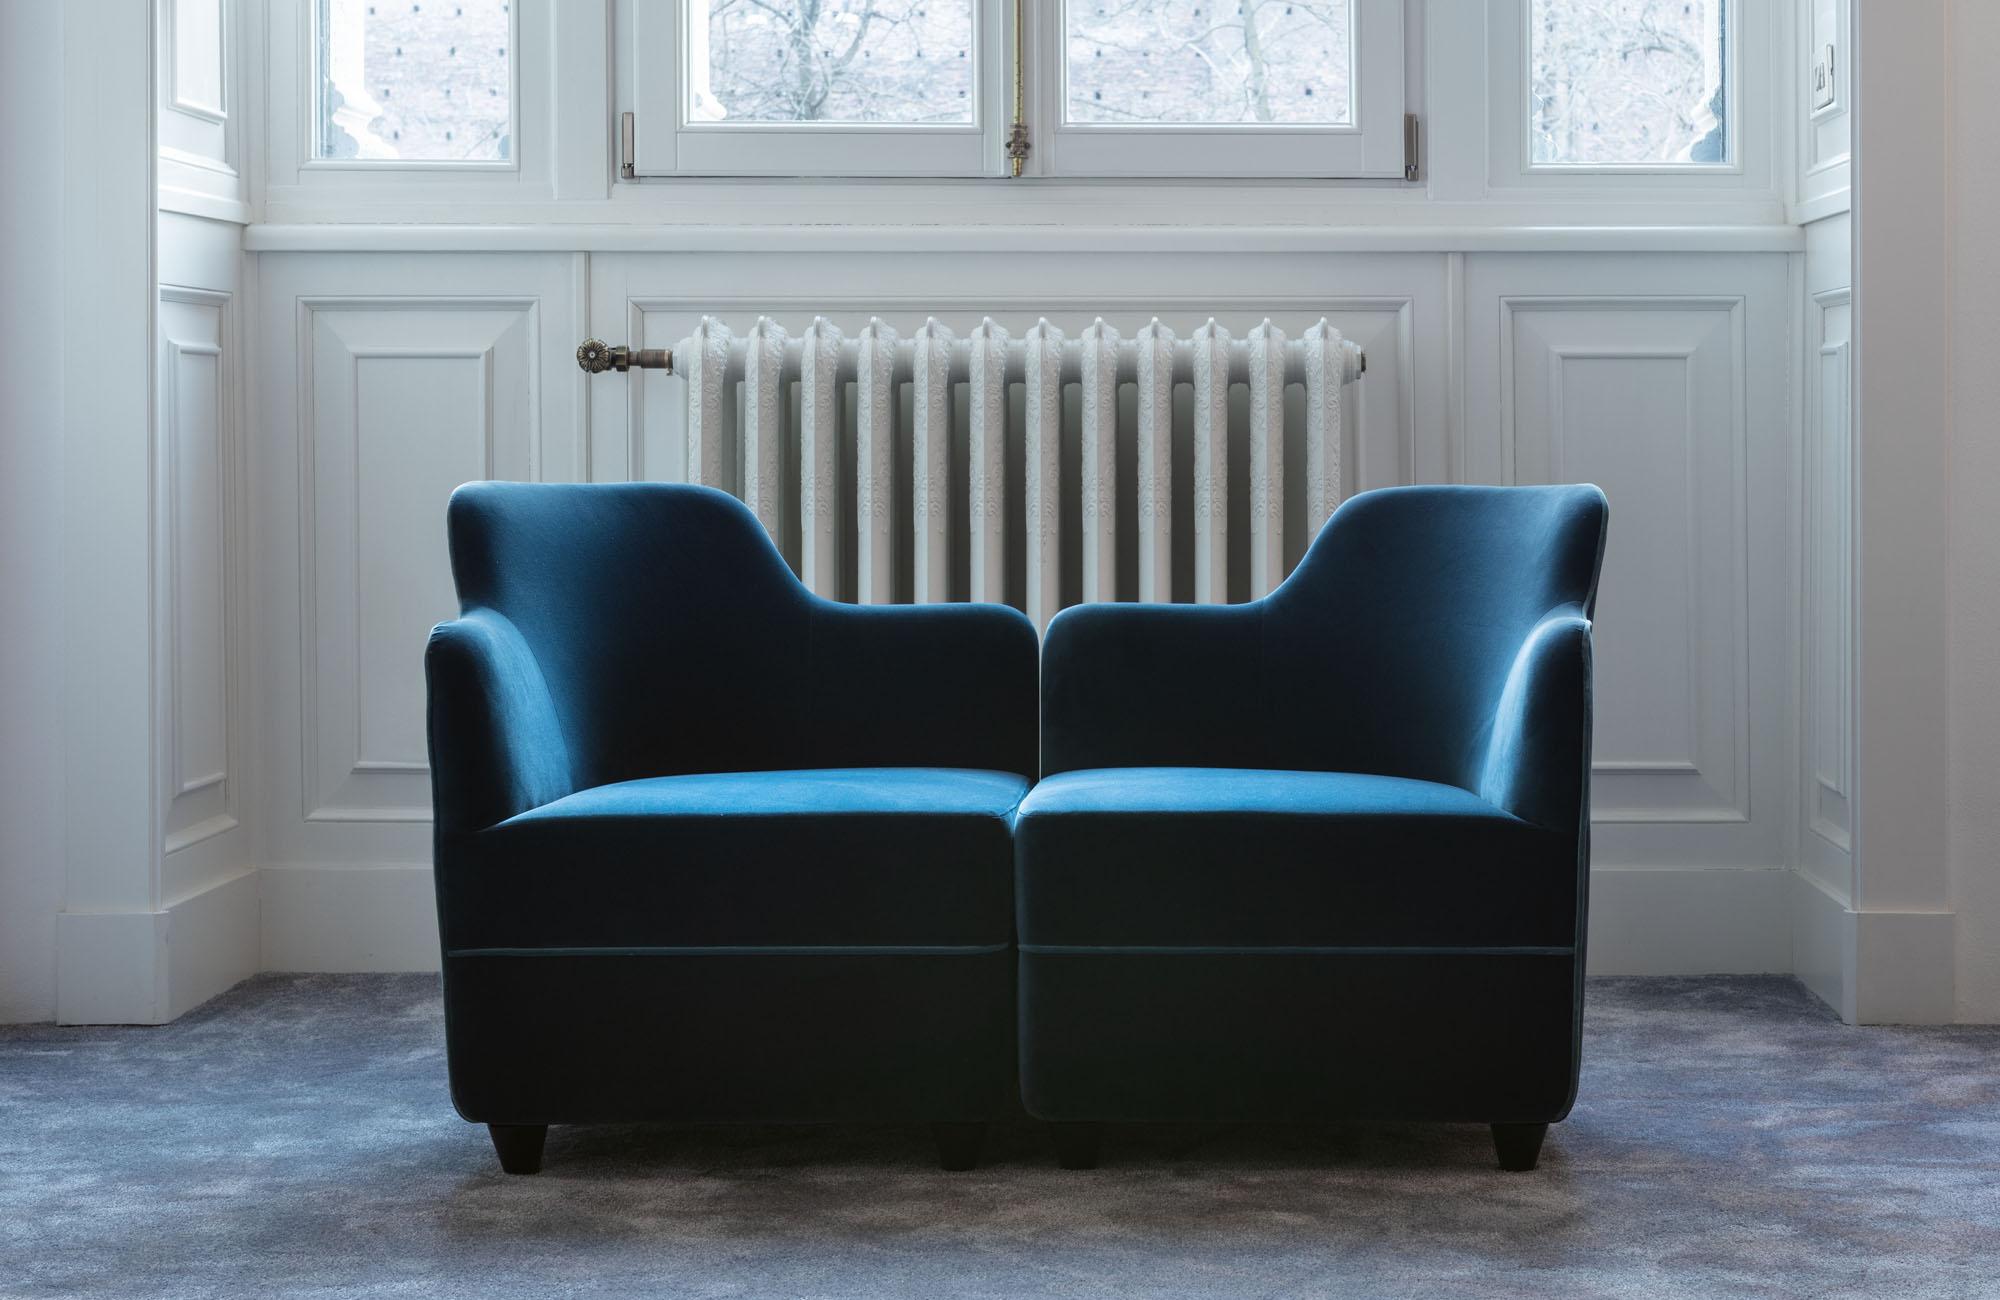 Kleiner Sessel mit Samtbezug in einer breiten Palette von Farben. Er kann mit anderen Sesseln oder Pouf-Modulen kombiniert werden, um größere, modulare Kombinationen zu schaffen.
Corrado Corradi Dell'acqua erfand 1963 den kantigen Sessel neu, der